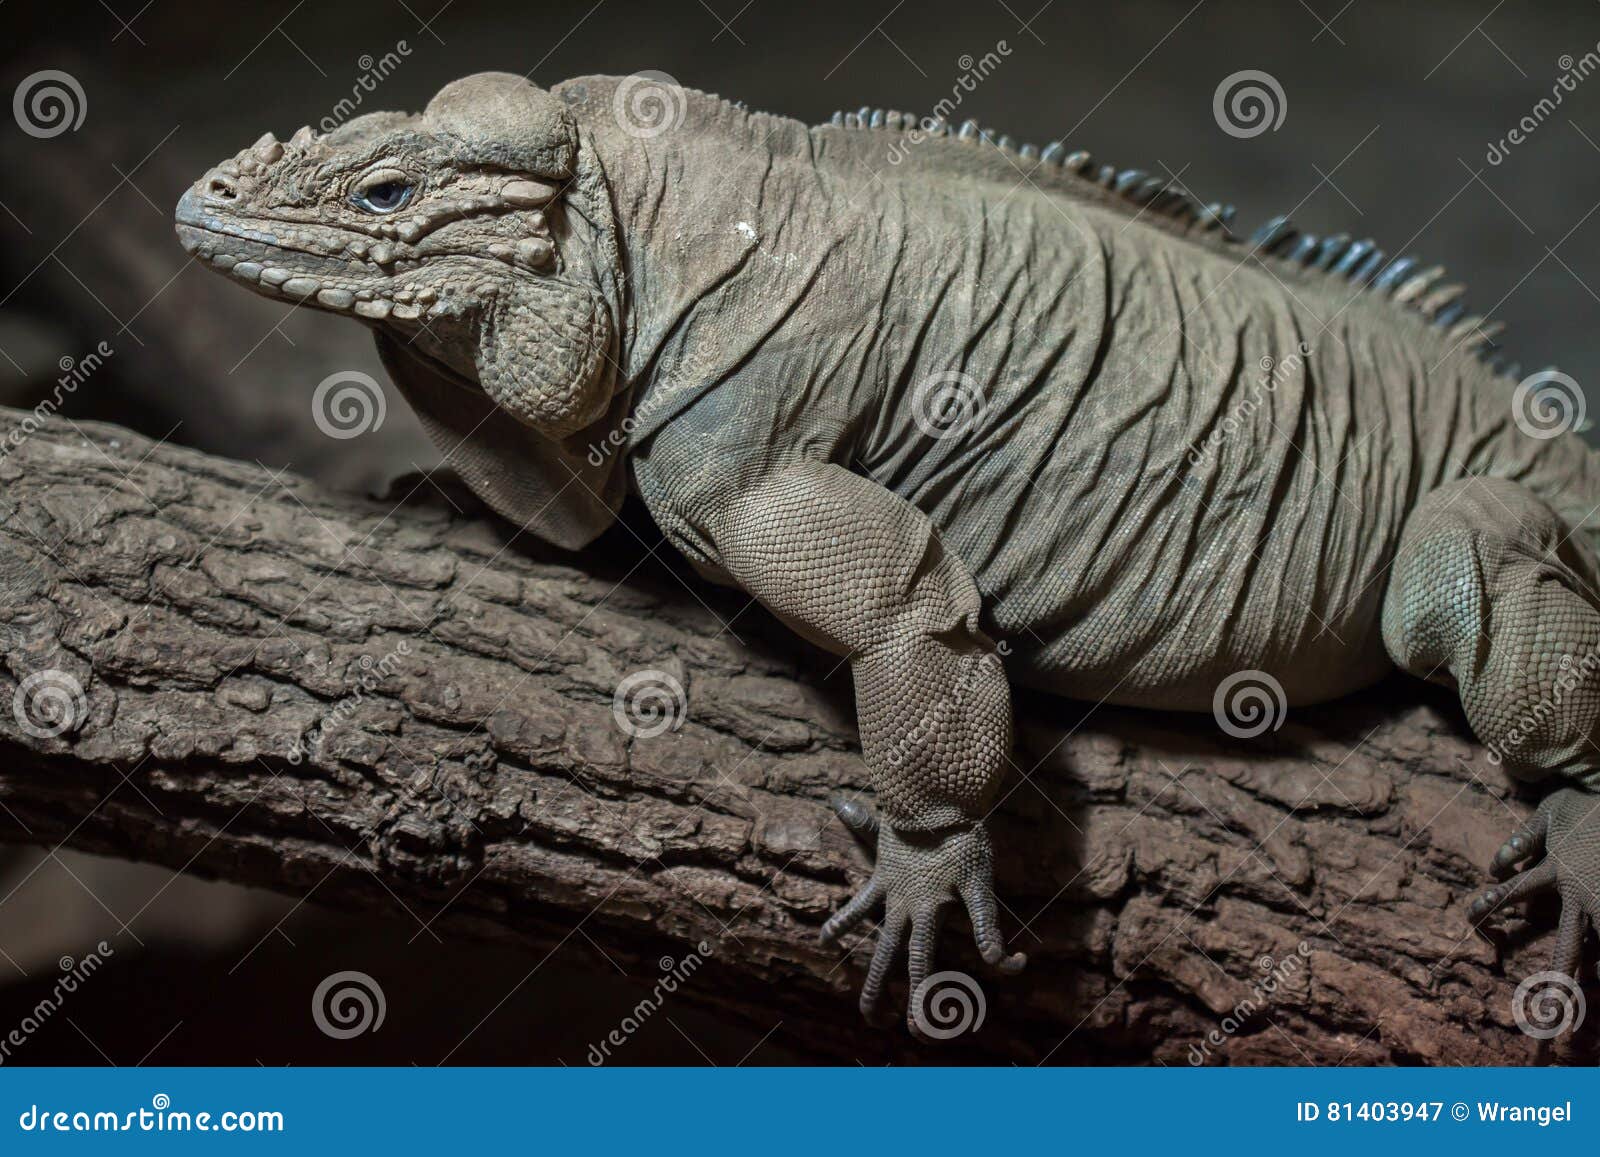 「裝死高手」犀牛鬣蜥 初生寶寶展絕活 | 台灣動物新聞網